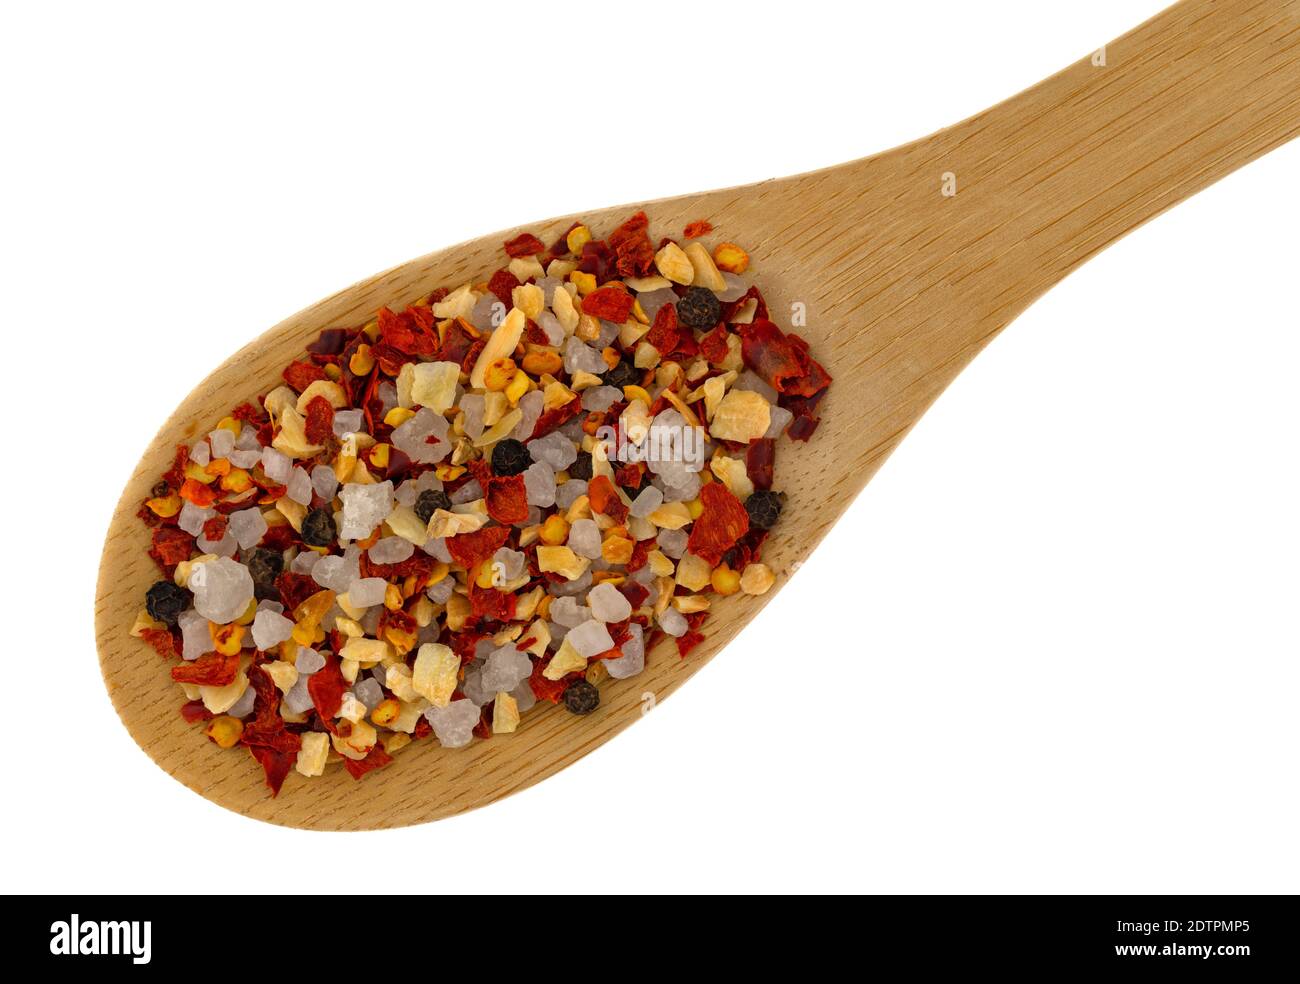 Vista dall'alto di una porzione di aglio e peperoncino condito su un cucchiaio di legno sopra uno sfondo bianco. Foto Stock